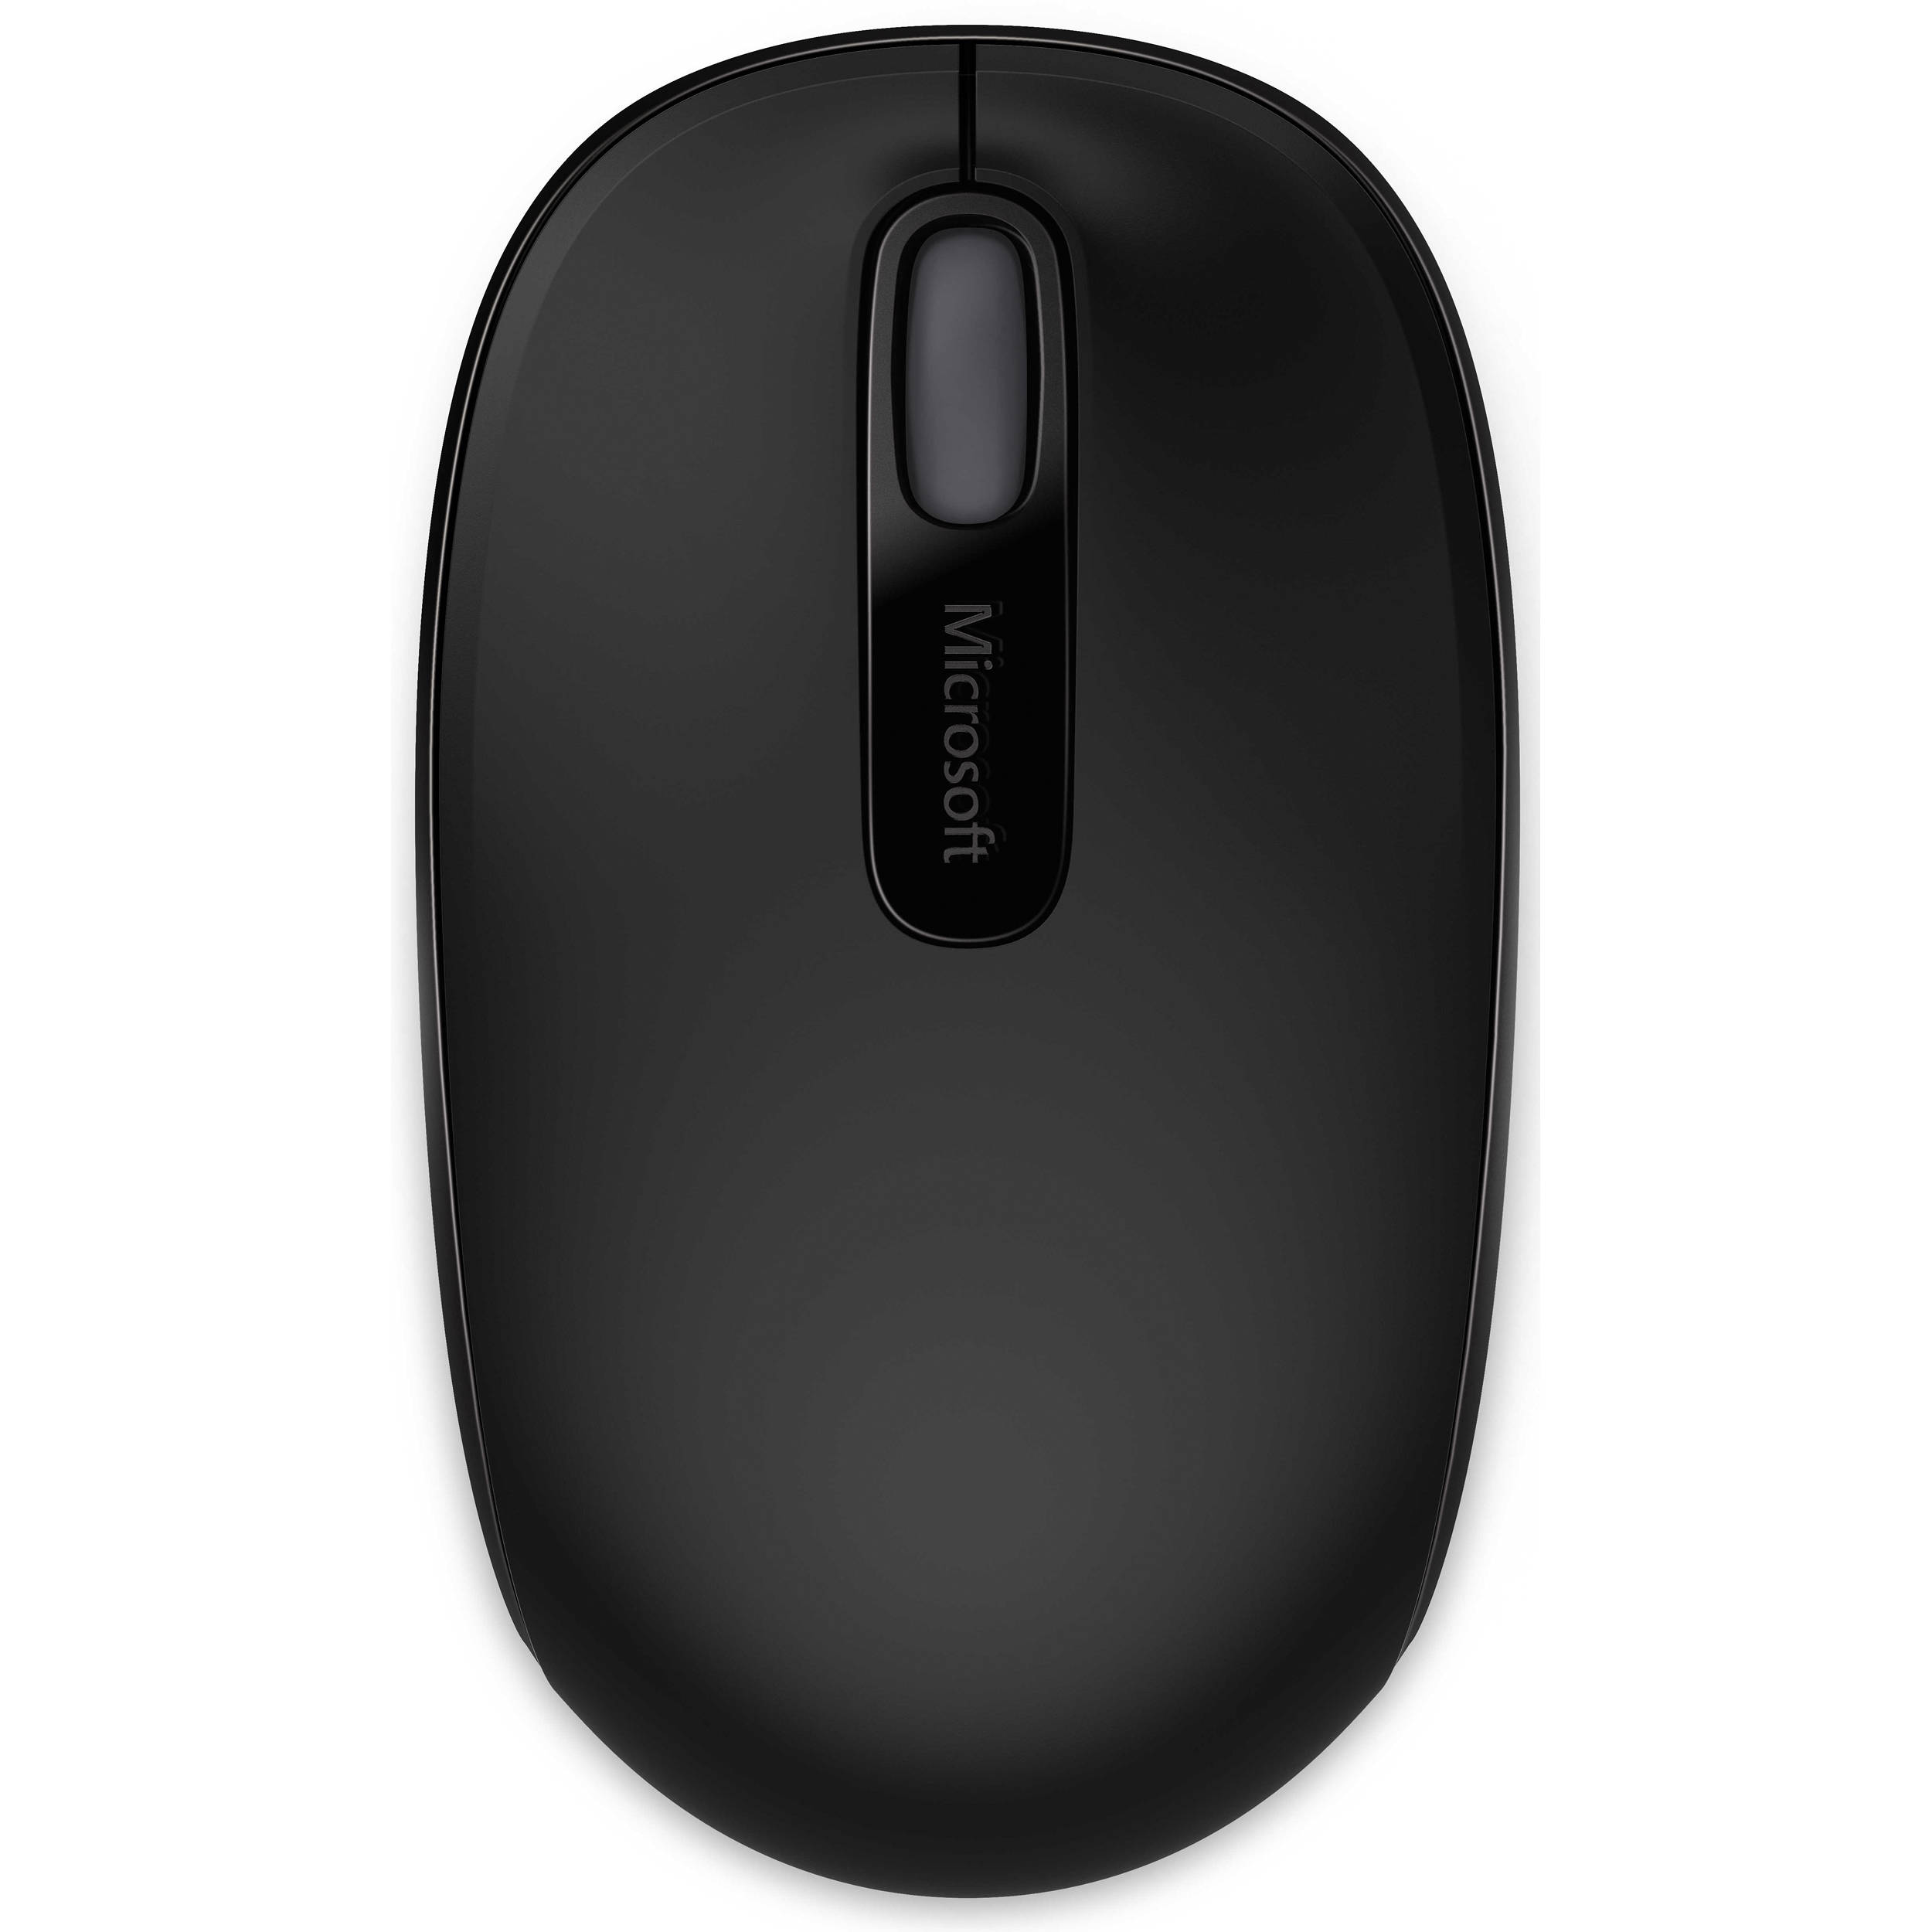 Microsoft Wireless Mobile Mouse 1850 | Help Tech Co. Ltd